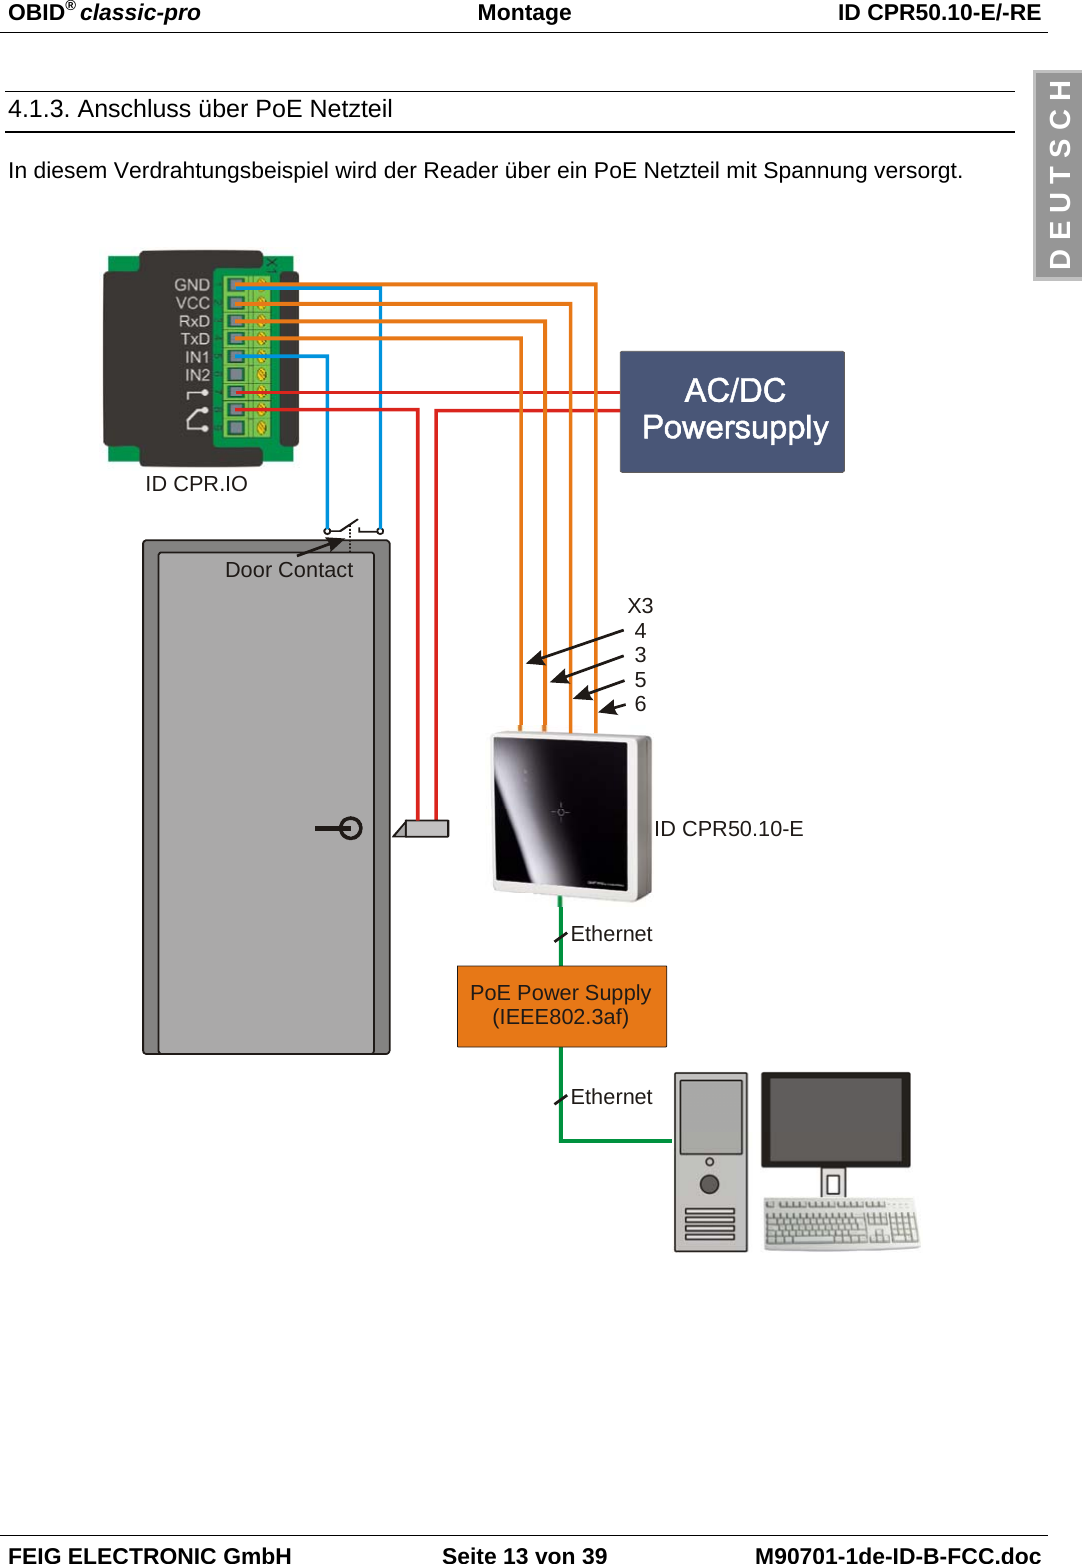 OBID® classic-pro Montage ID CPR50.10-E/-REFEIG ELECTRONIC GmbH Seite 13 von 39 M90701-1de-ID-B-FCC.docD E U T S C H4.1.3. Anschluss über PoE NetzteilIn diesem Verdrahtungsbeispiel wird der Reader über ein PoE Netzteil mit Spannung versorgt.PoE Power Supply(IEEE802.3af)EthernetEthernetID CPR.IOID CPR50.10-EDoor ContactX34356